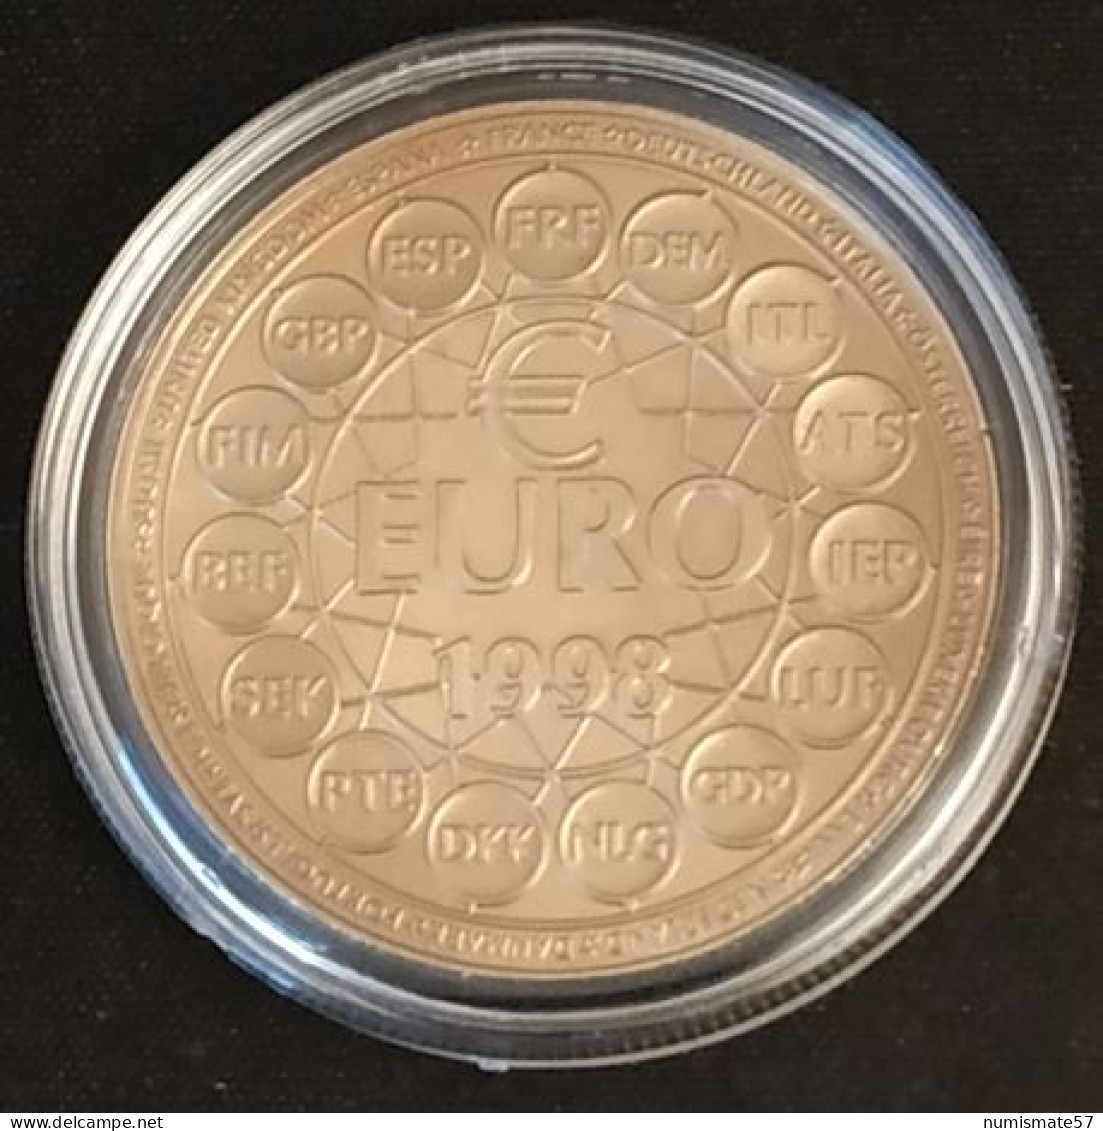 ESSAI - 10 Euros Essai 1998 - Bronze Florentin - Essais, Piéforts, épreuves & Flans Brunis